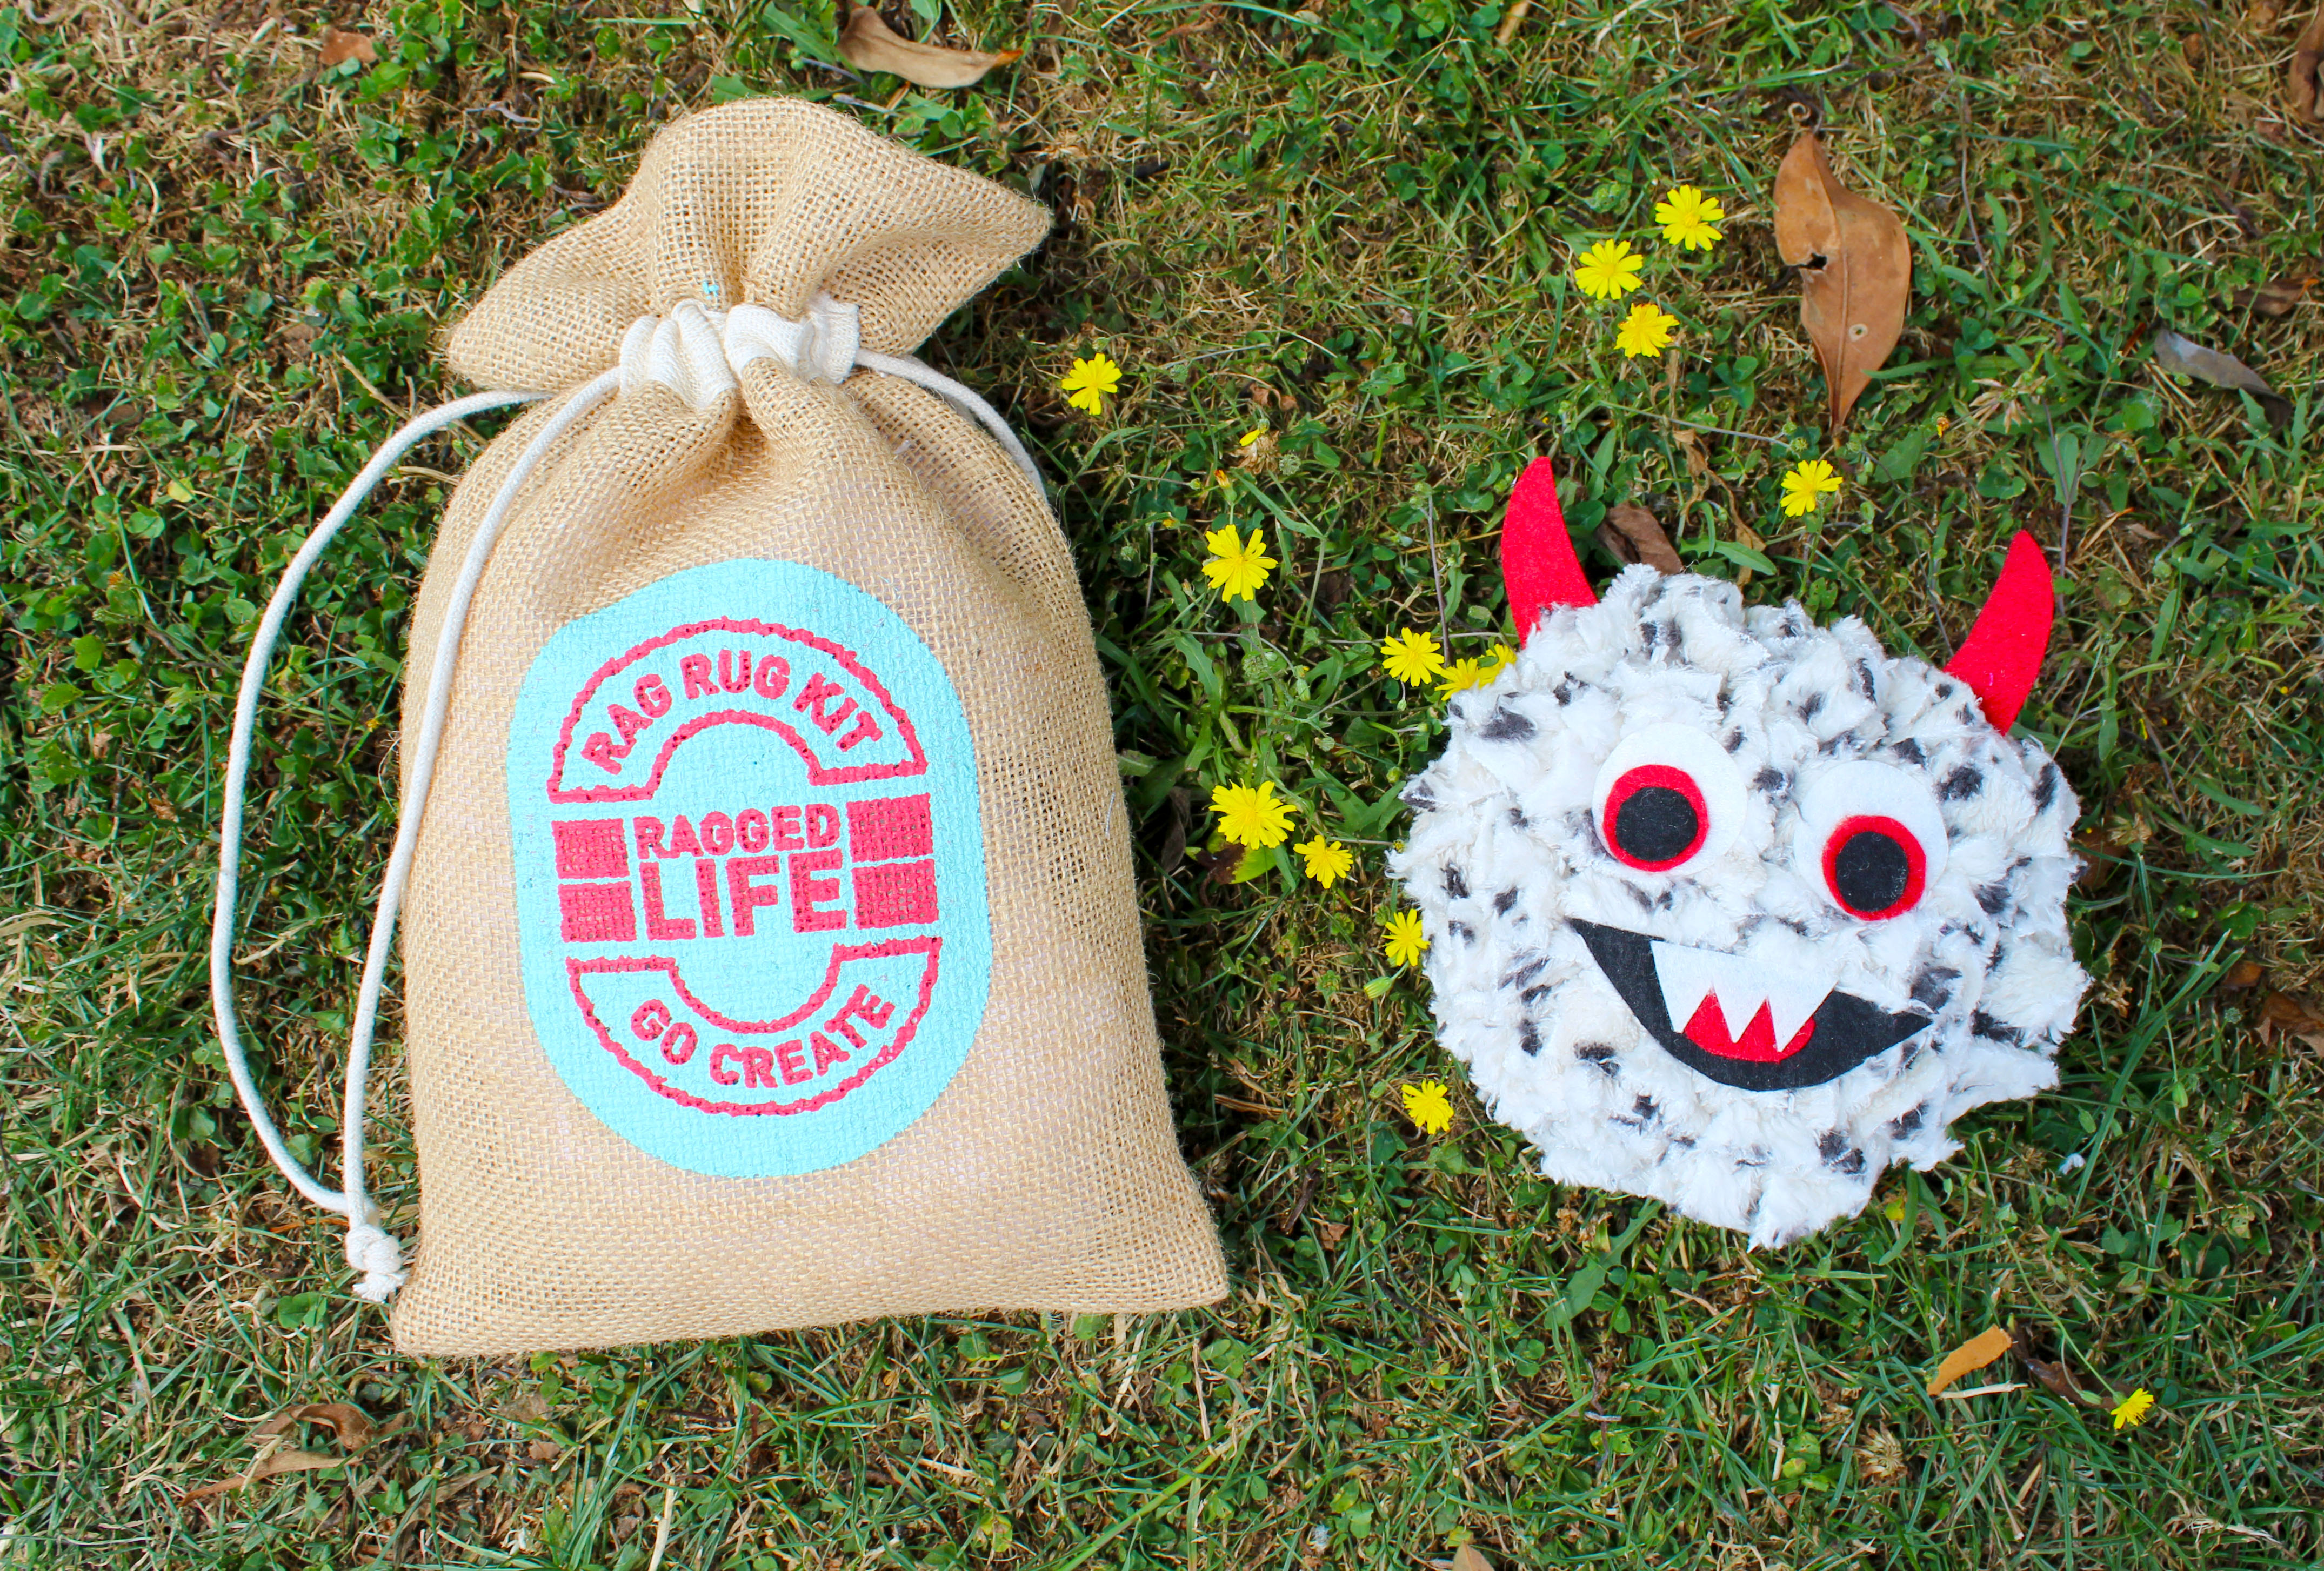 Ragged Life Rag-a-Monster Rag Rug Kit bag and rag-a-monster toy on grass